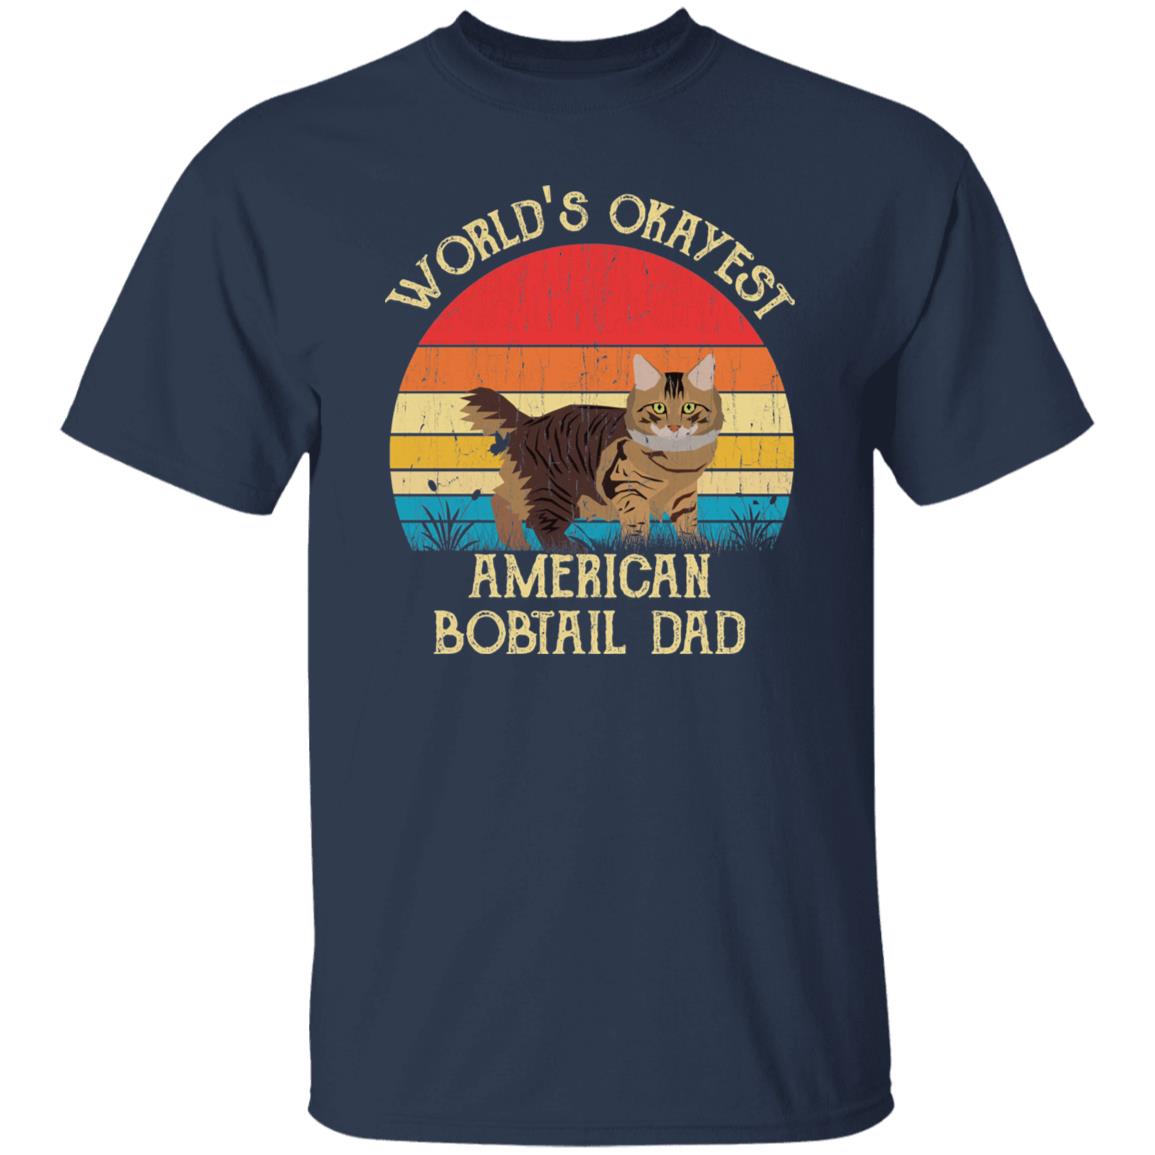 World's Okayest American bobtail dad Retro Style Unisex T-shirt Black Navy Dark Heather-Navy-Family-Gift-Planet